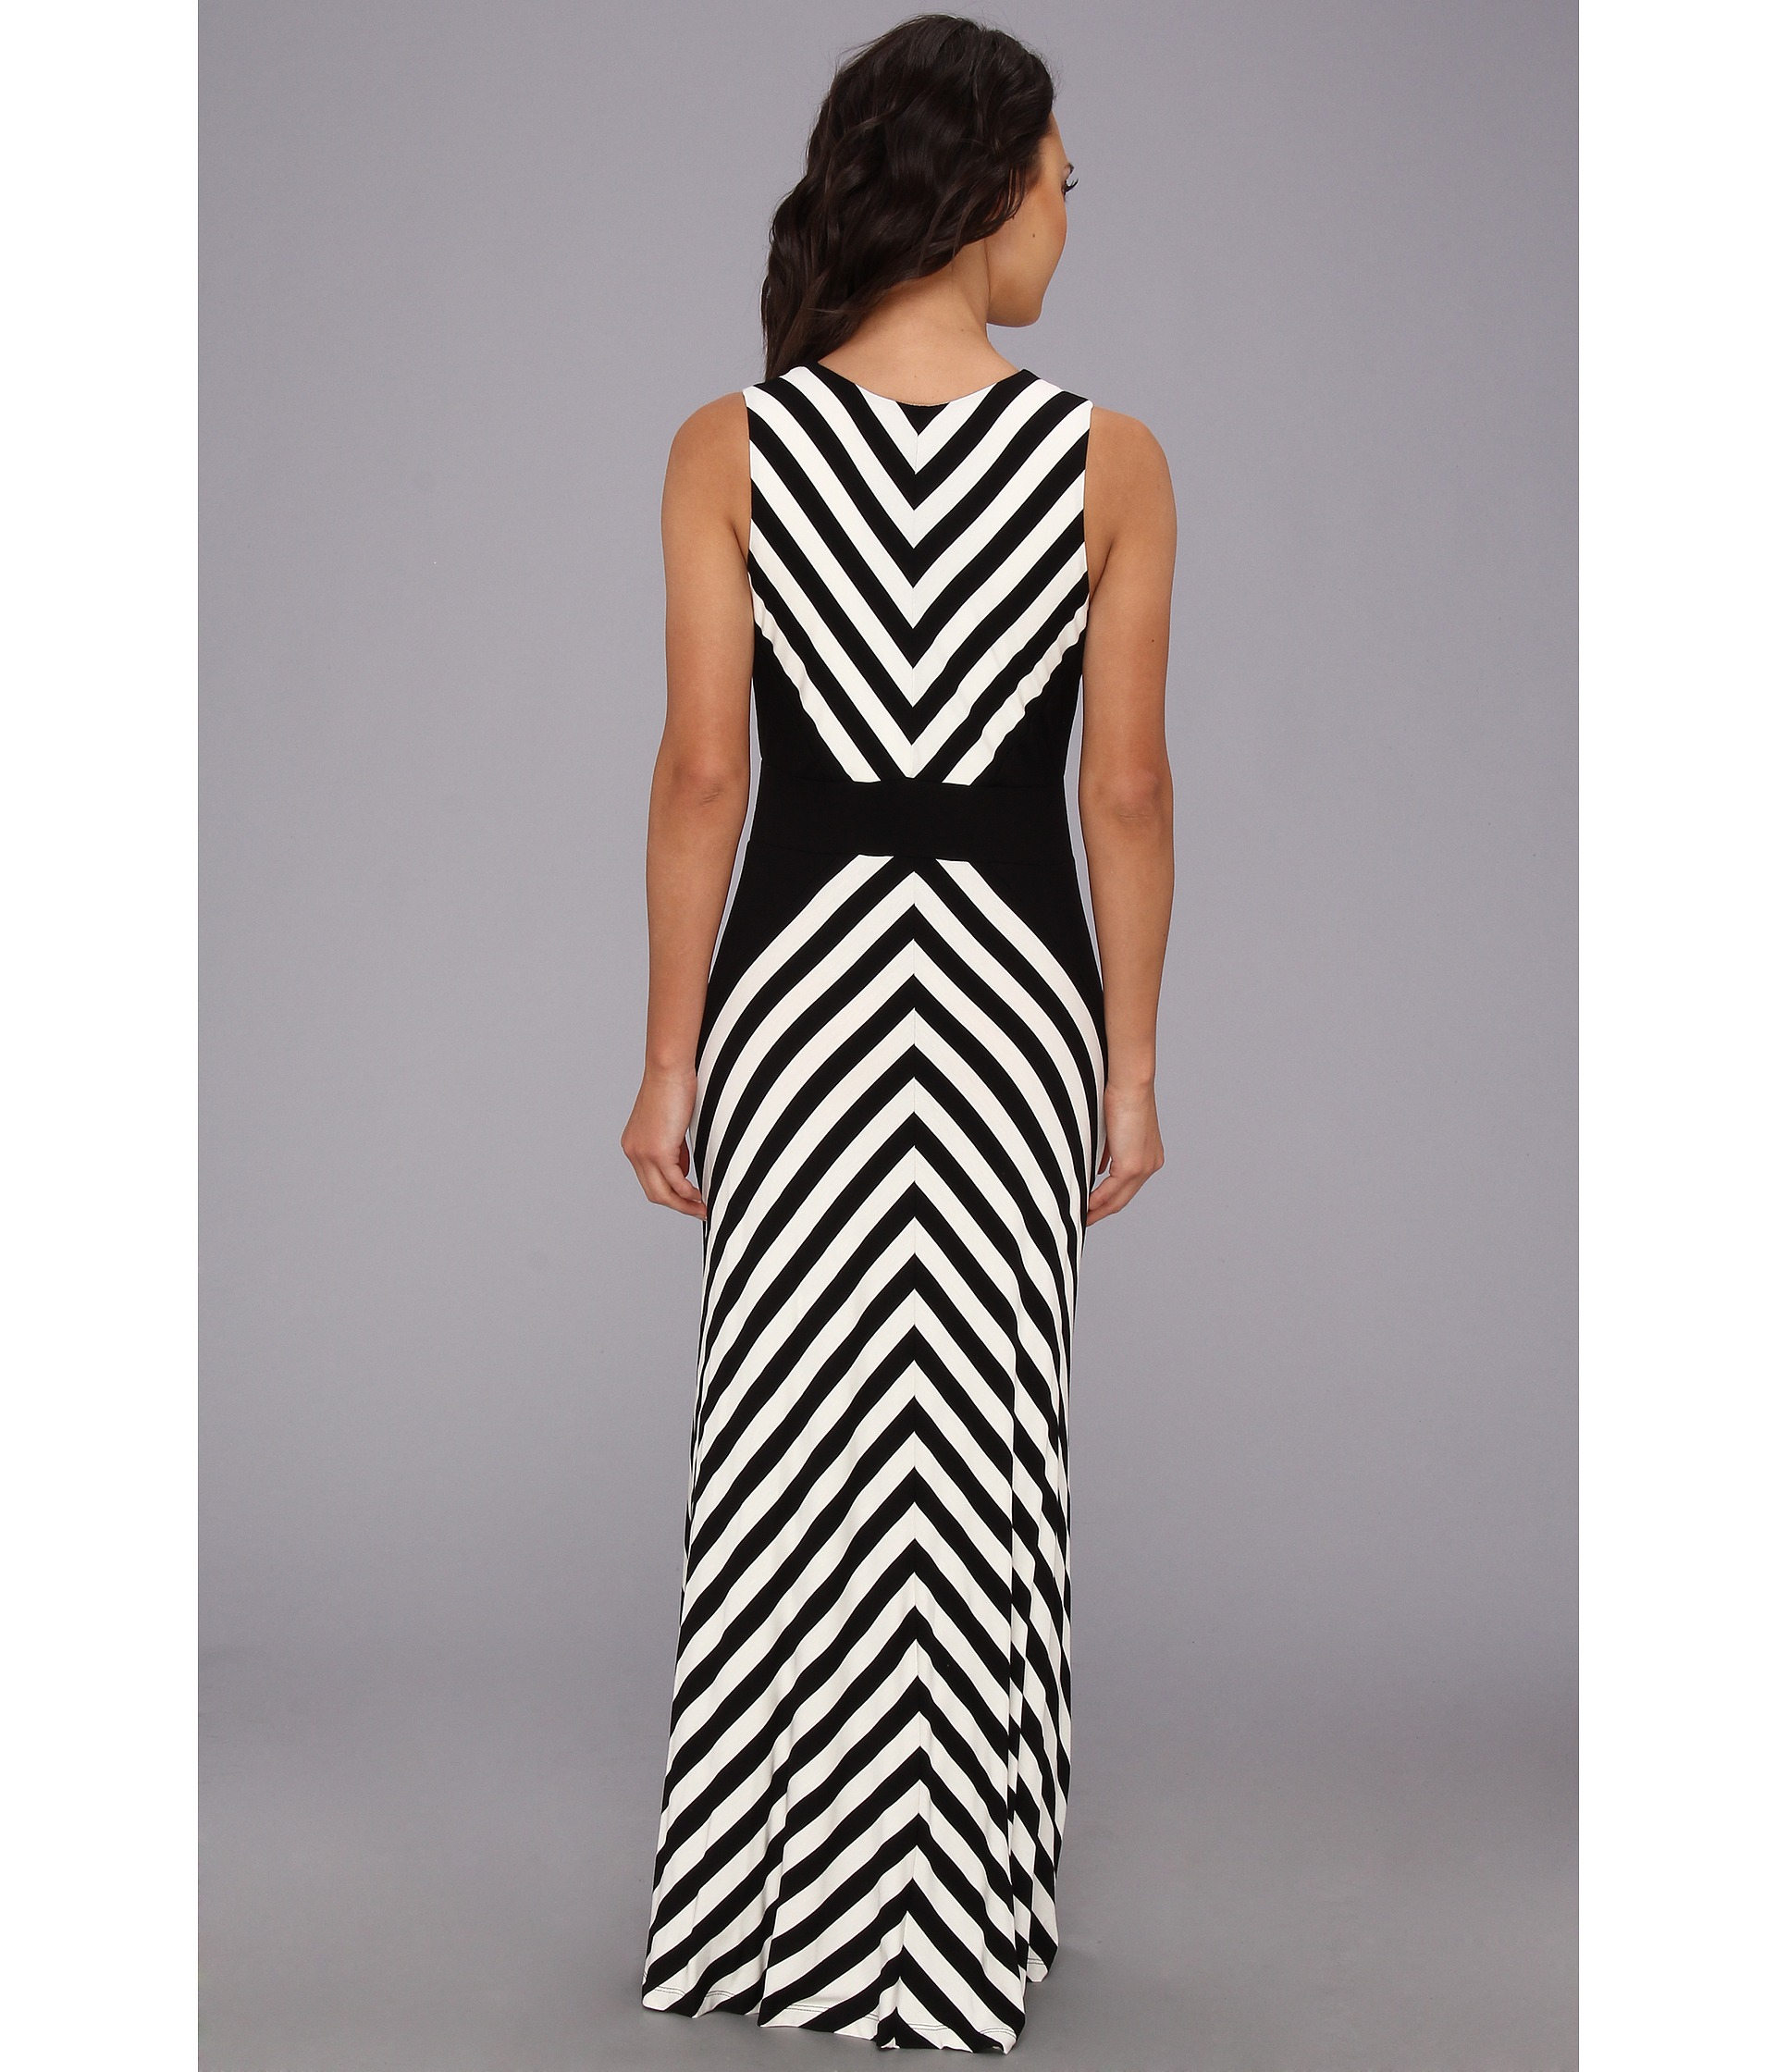 Calvin Klein Mitered Striped Maxi Dress in Black/White (Black) - Lyst